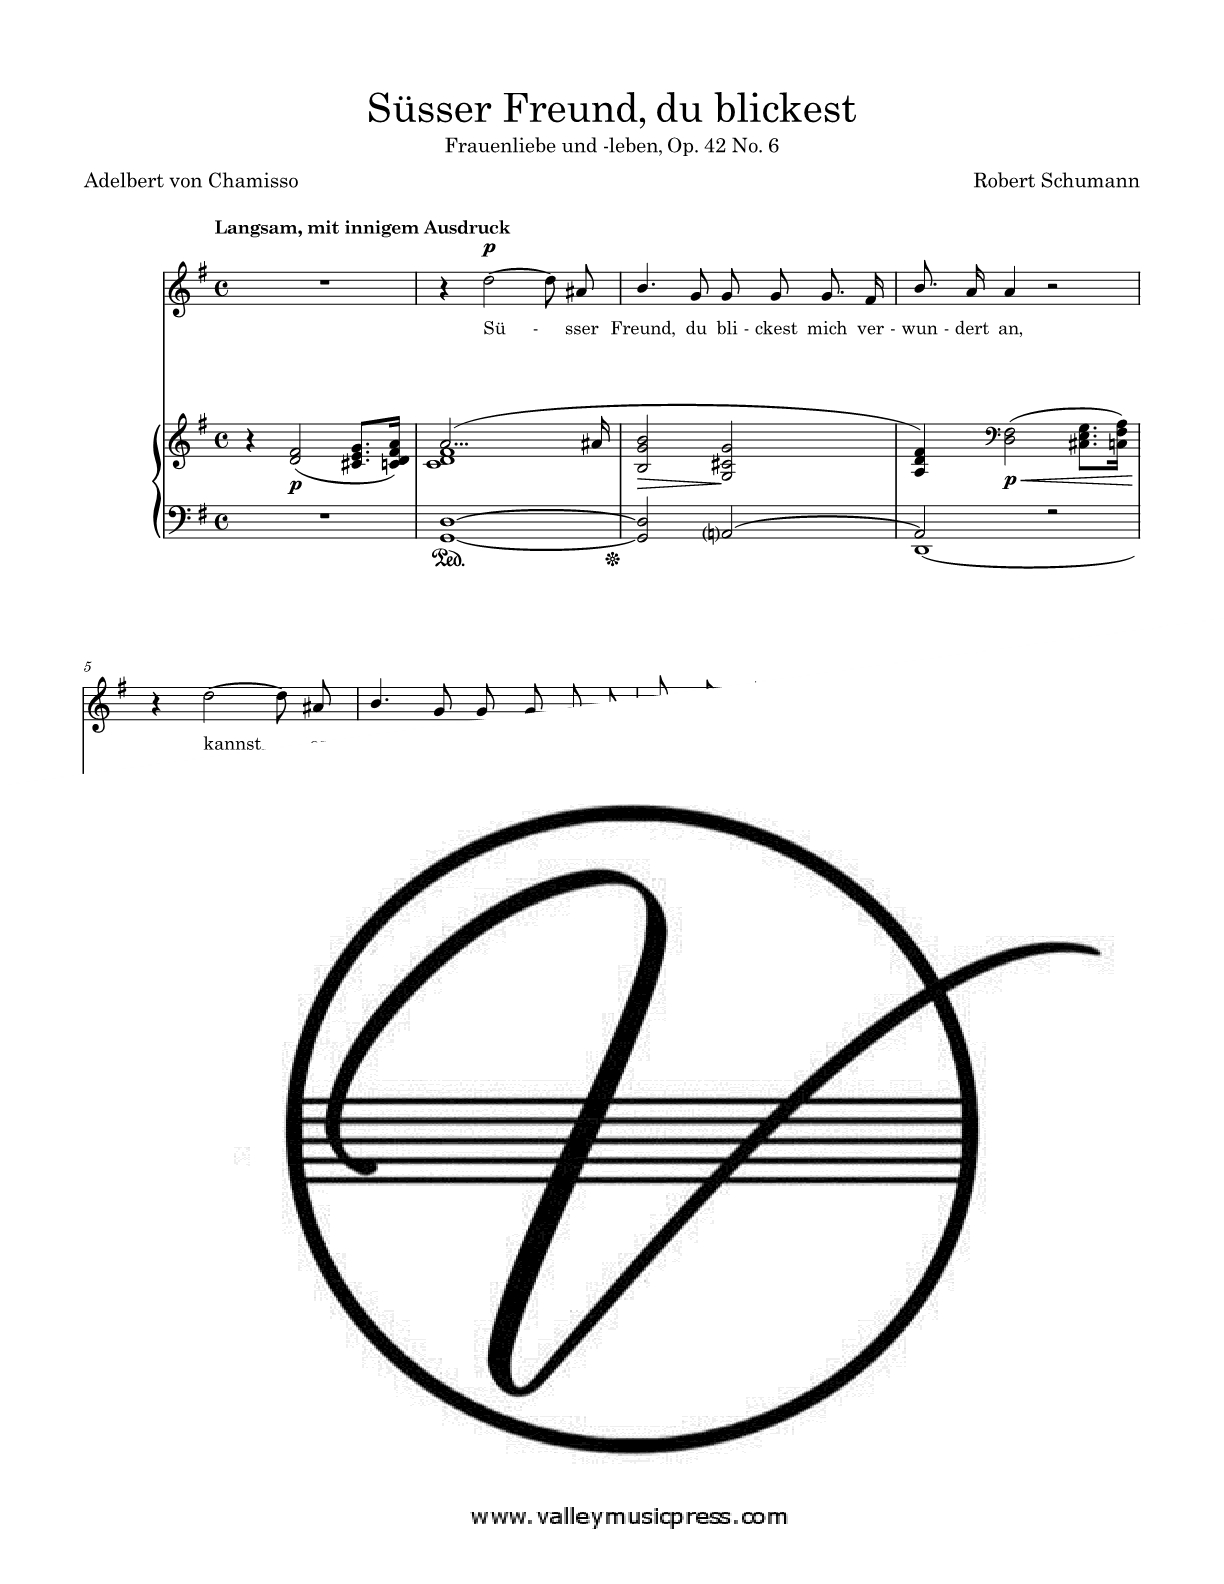 Schumann - Susser Freund, du blickest Op. 42 No. 6 (Voice) - Click Image to Close